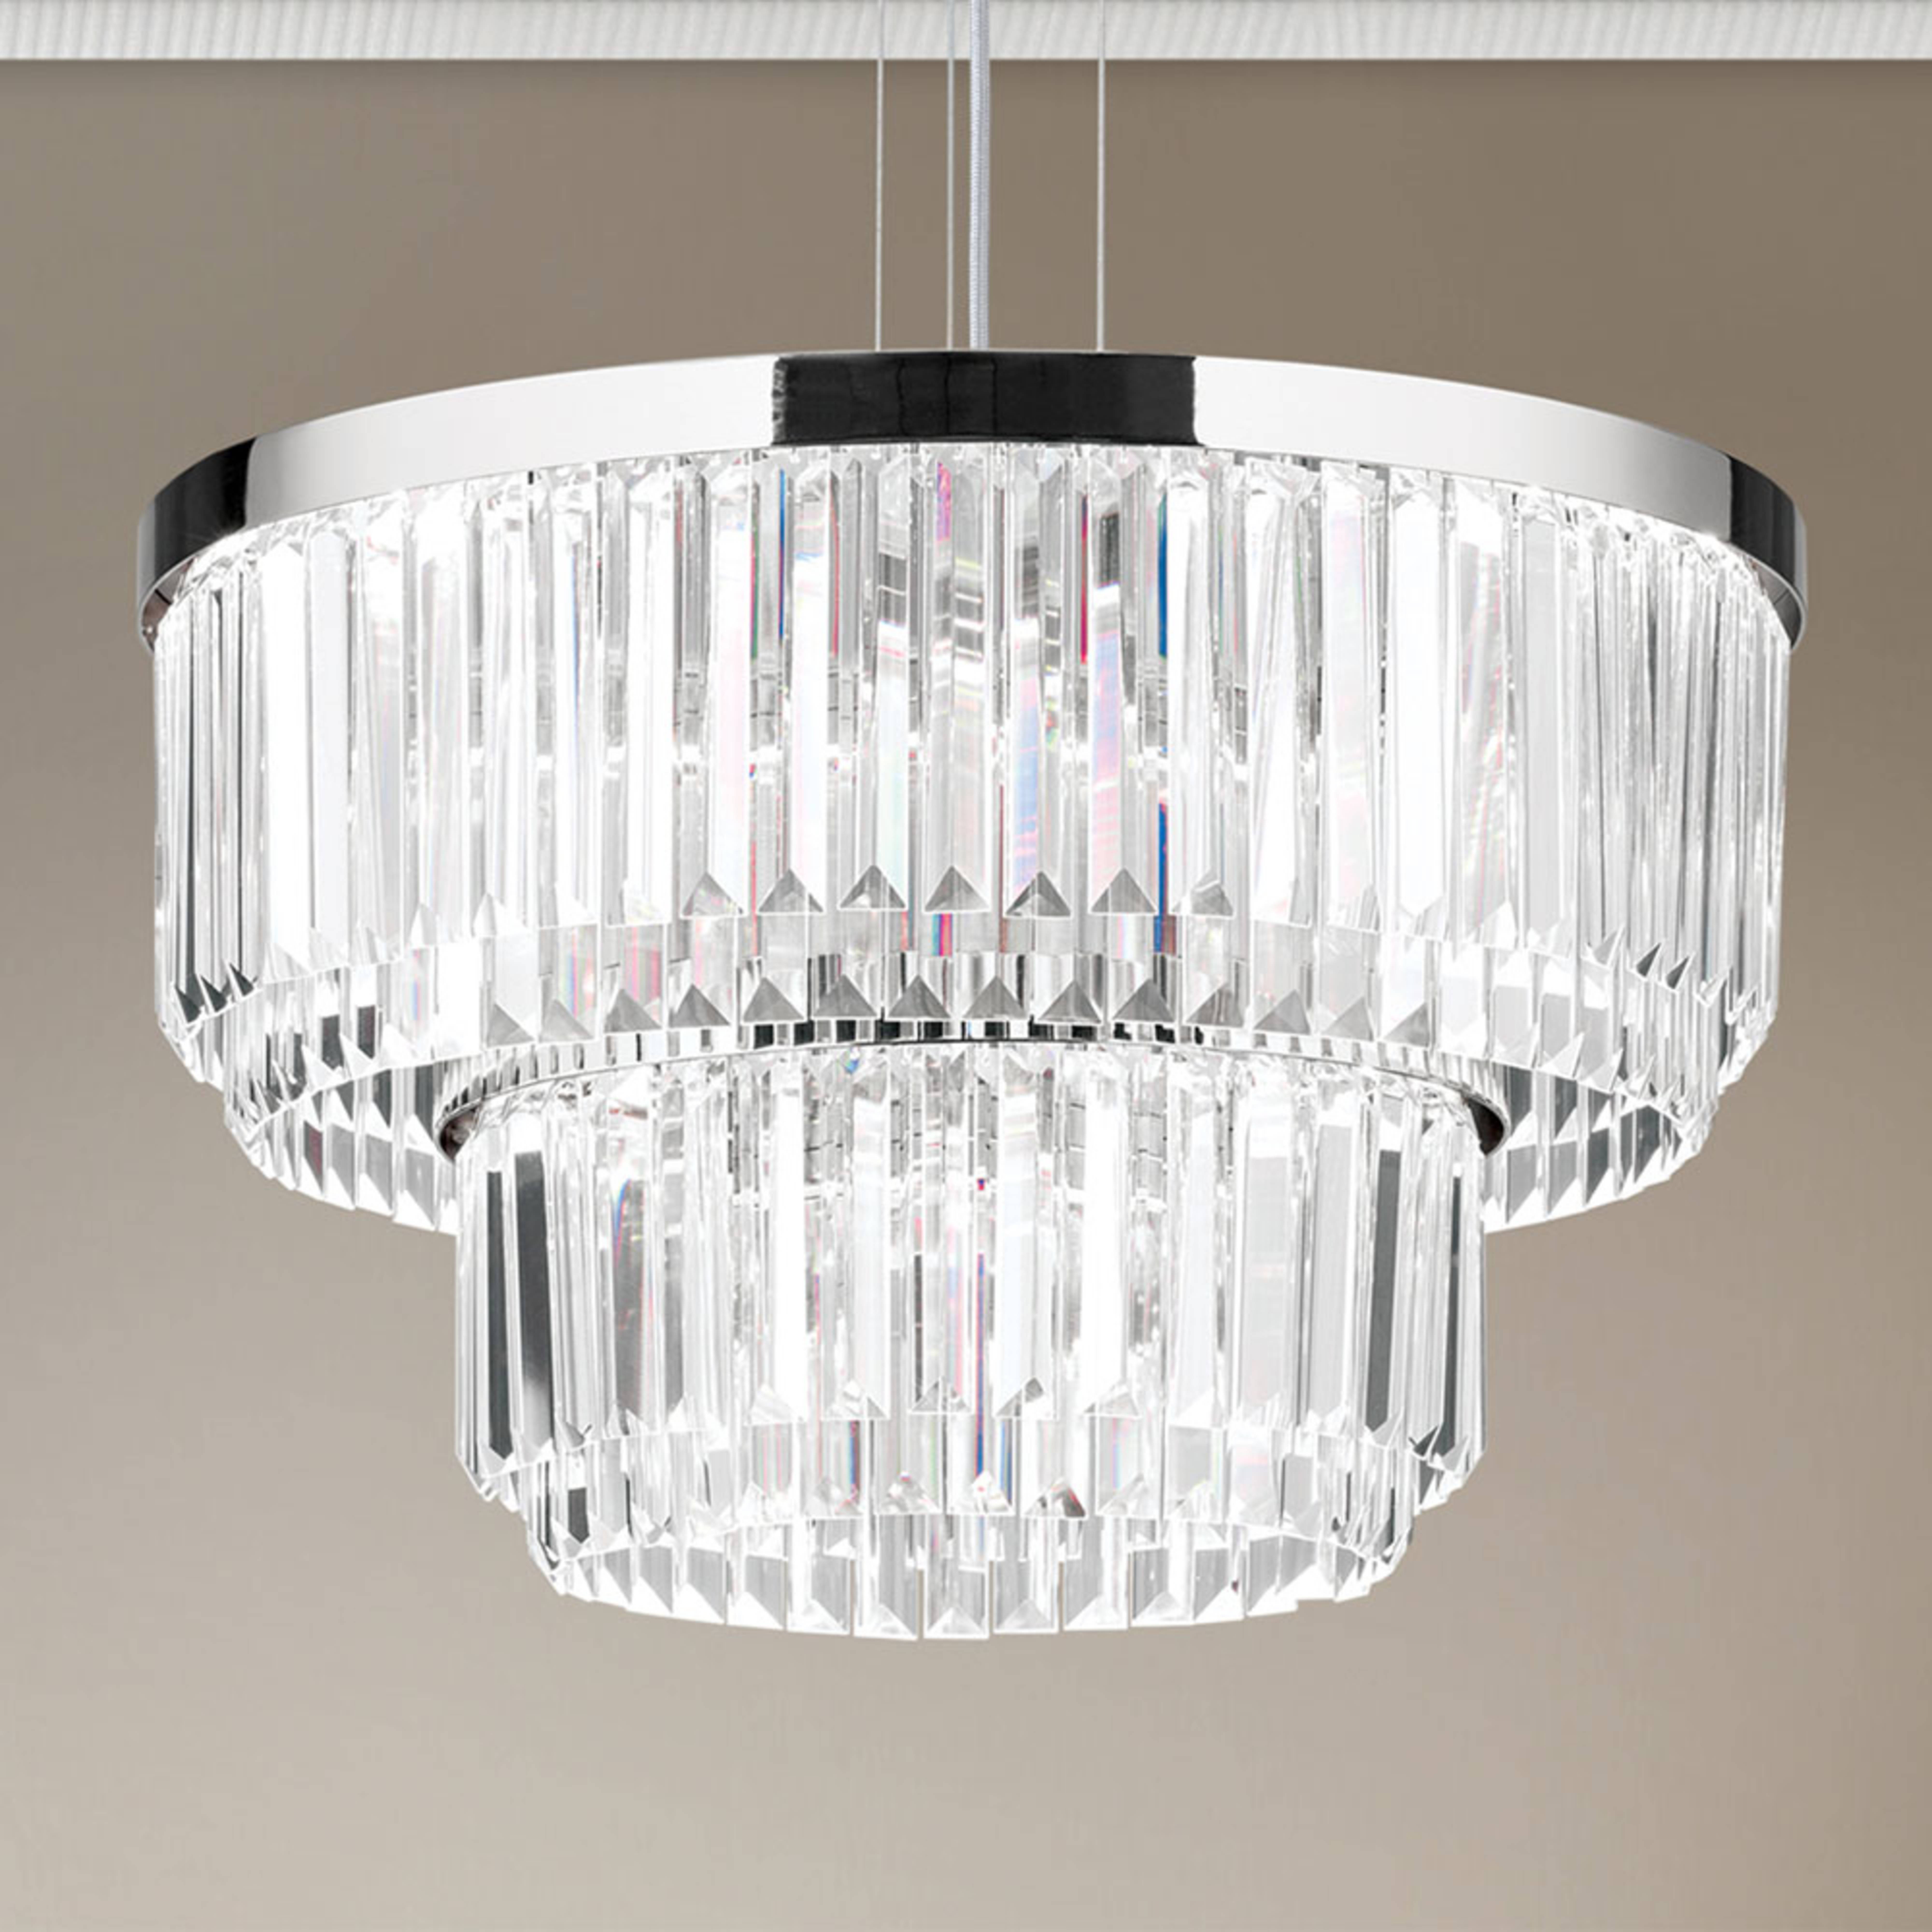 Suspension LED Prism, ronde, Ø 55 cm, chromée